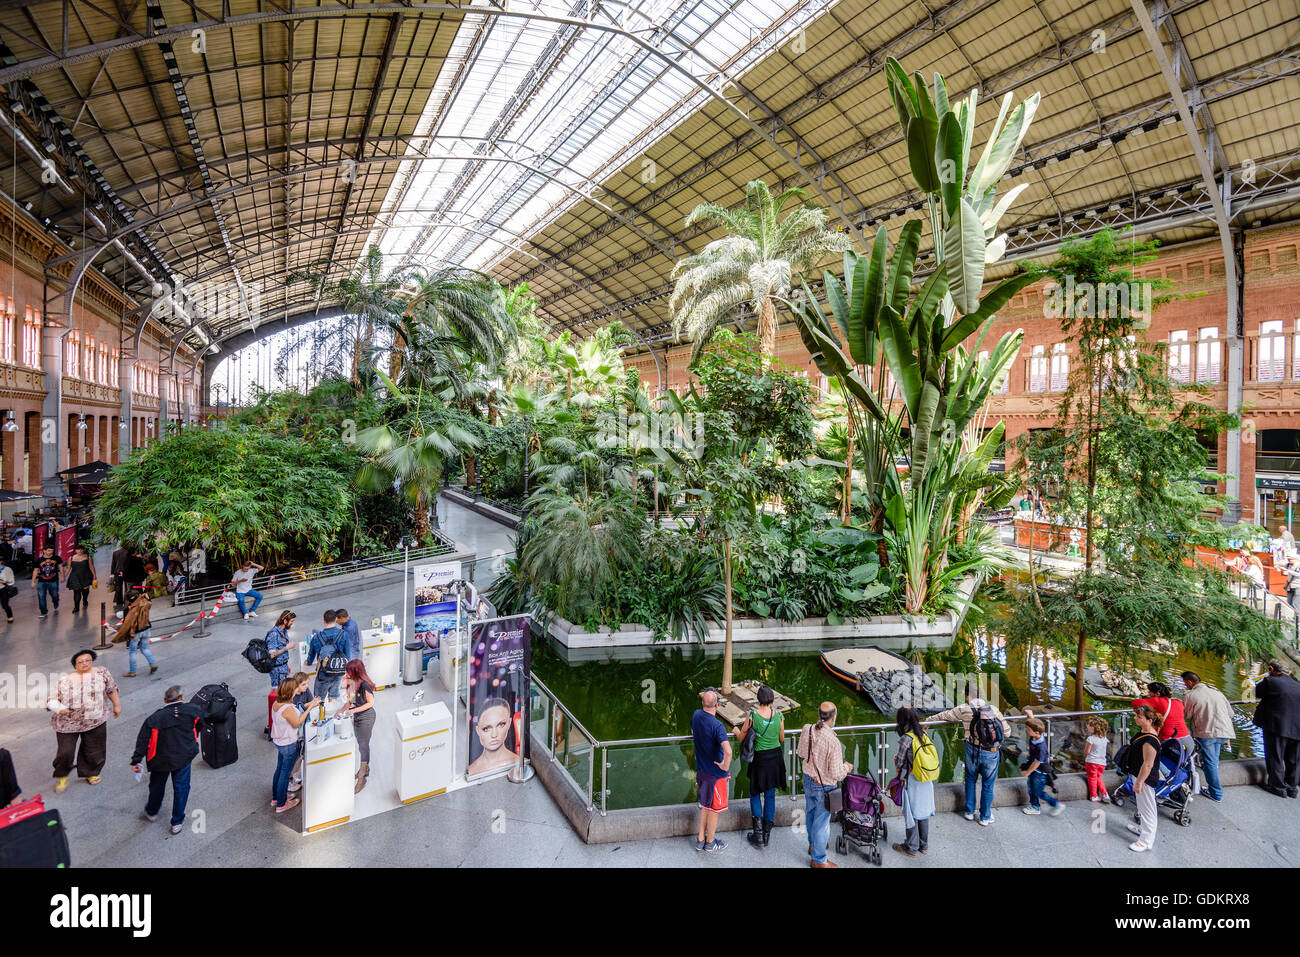 MADRID, Spanien - 18. November 2014: Bahnhof Atocha, der größte Bahnhof in Madrid. Stockfoto